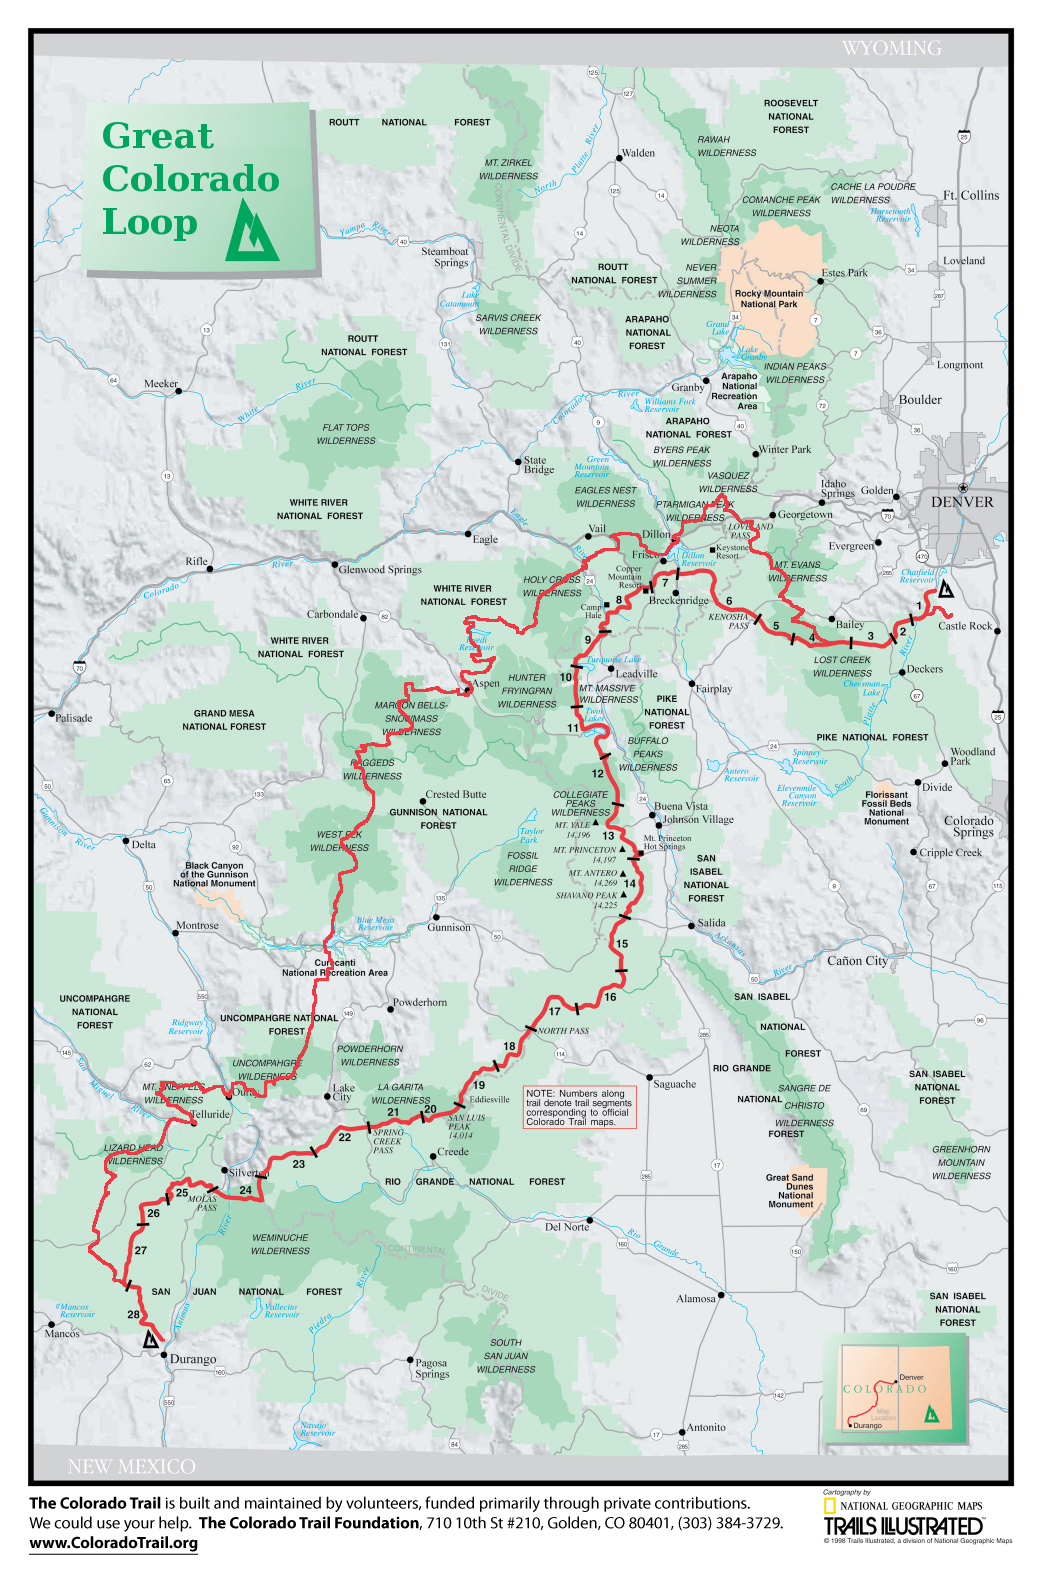 Great Colorado Loop (proposed)